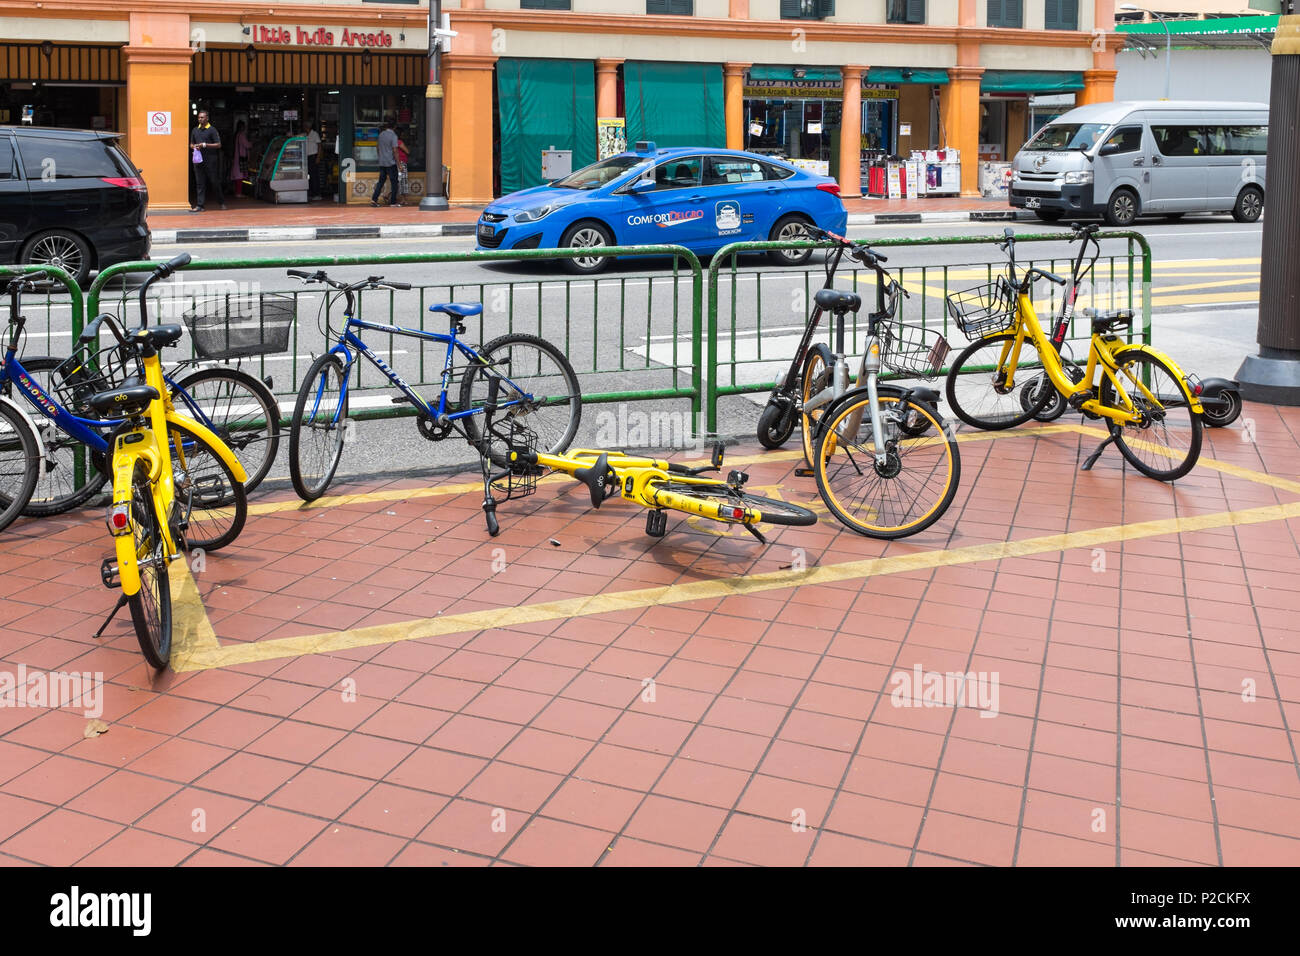 Pubblico giallo noleggio bici a sinistra in una zona designata sul marciapiede alla Serangoon Road in Little India quartiere di Singapore Foto Stock